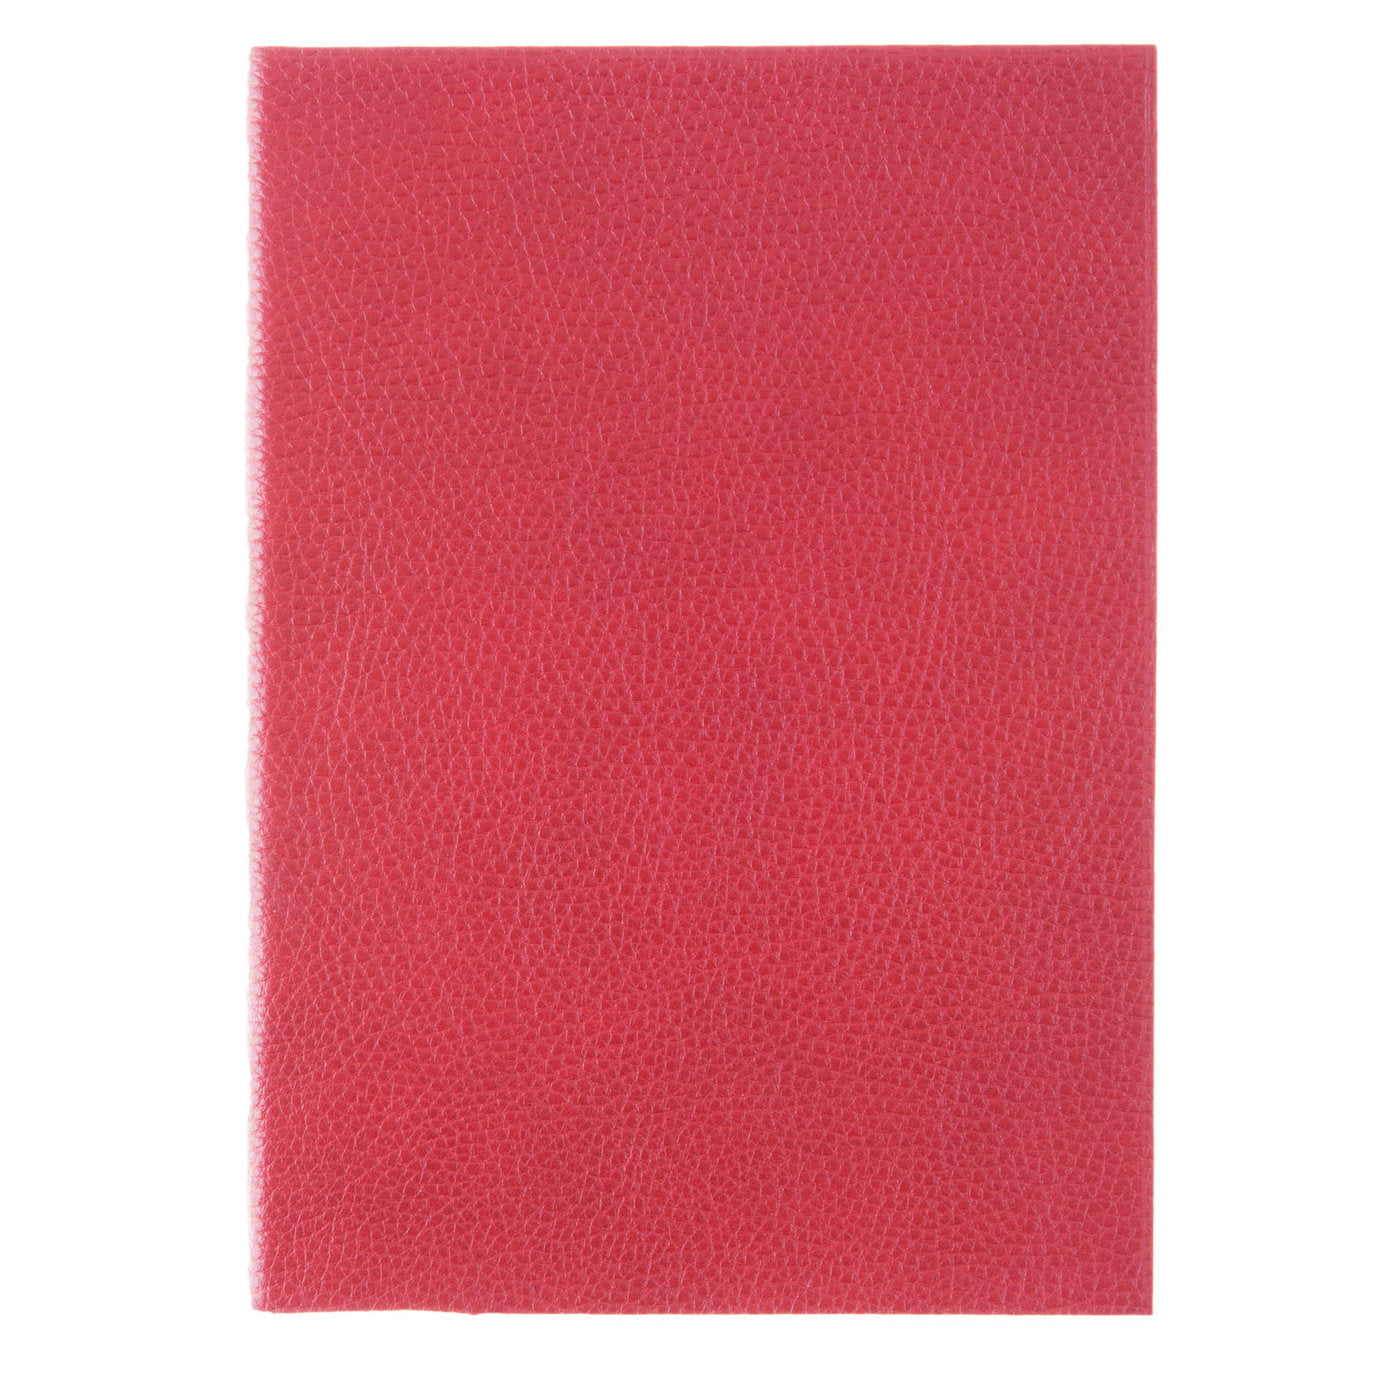 Cuaderno de cuero rojo - Vista alternativa 1